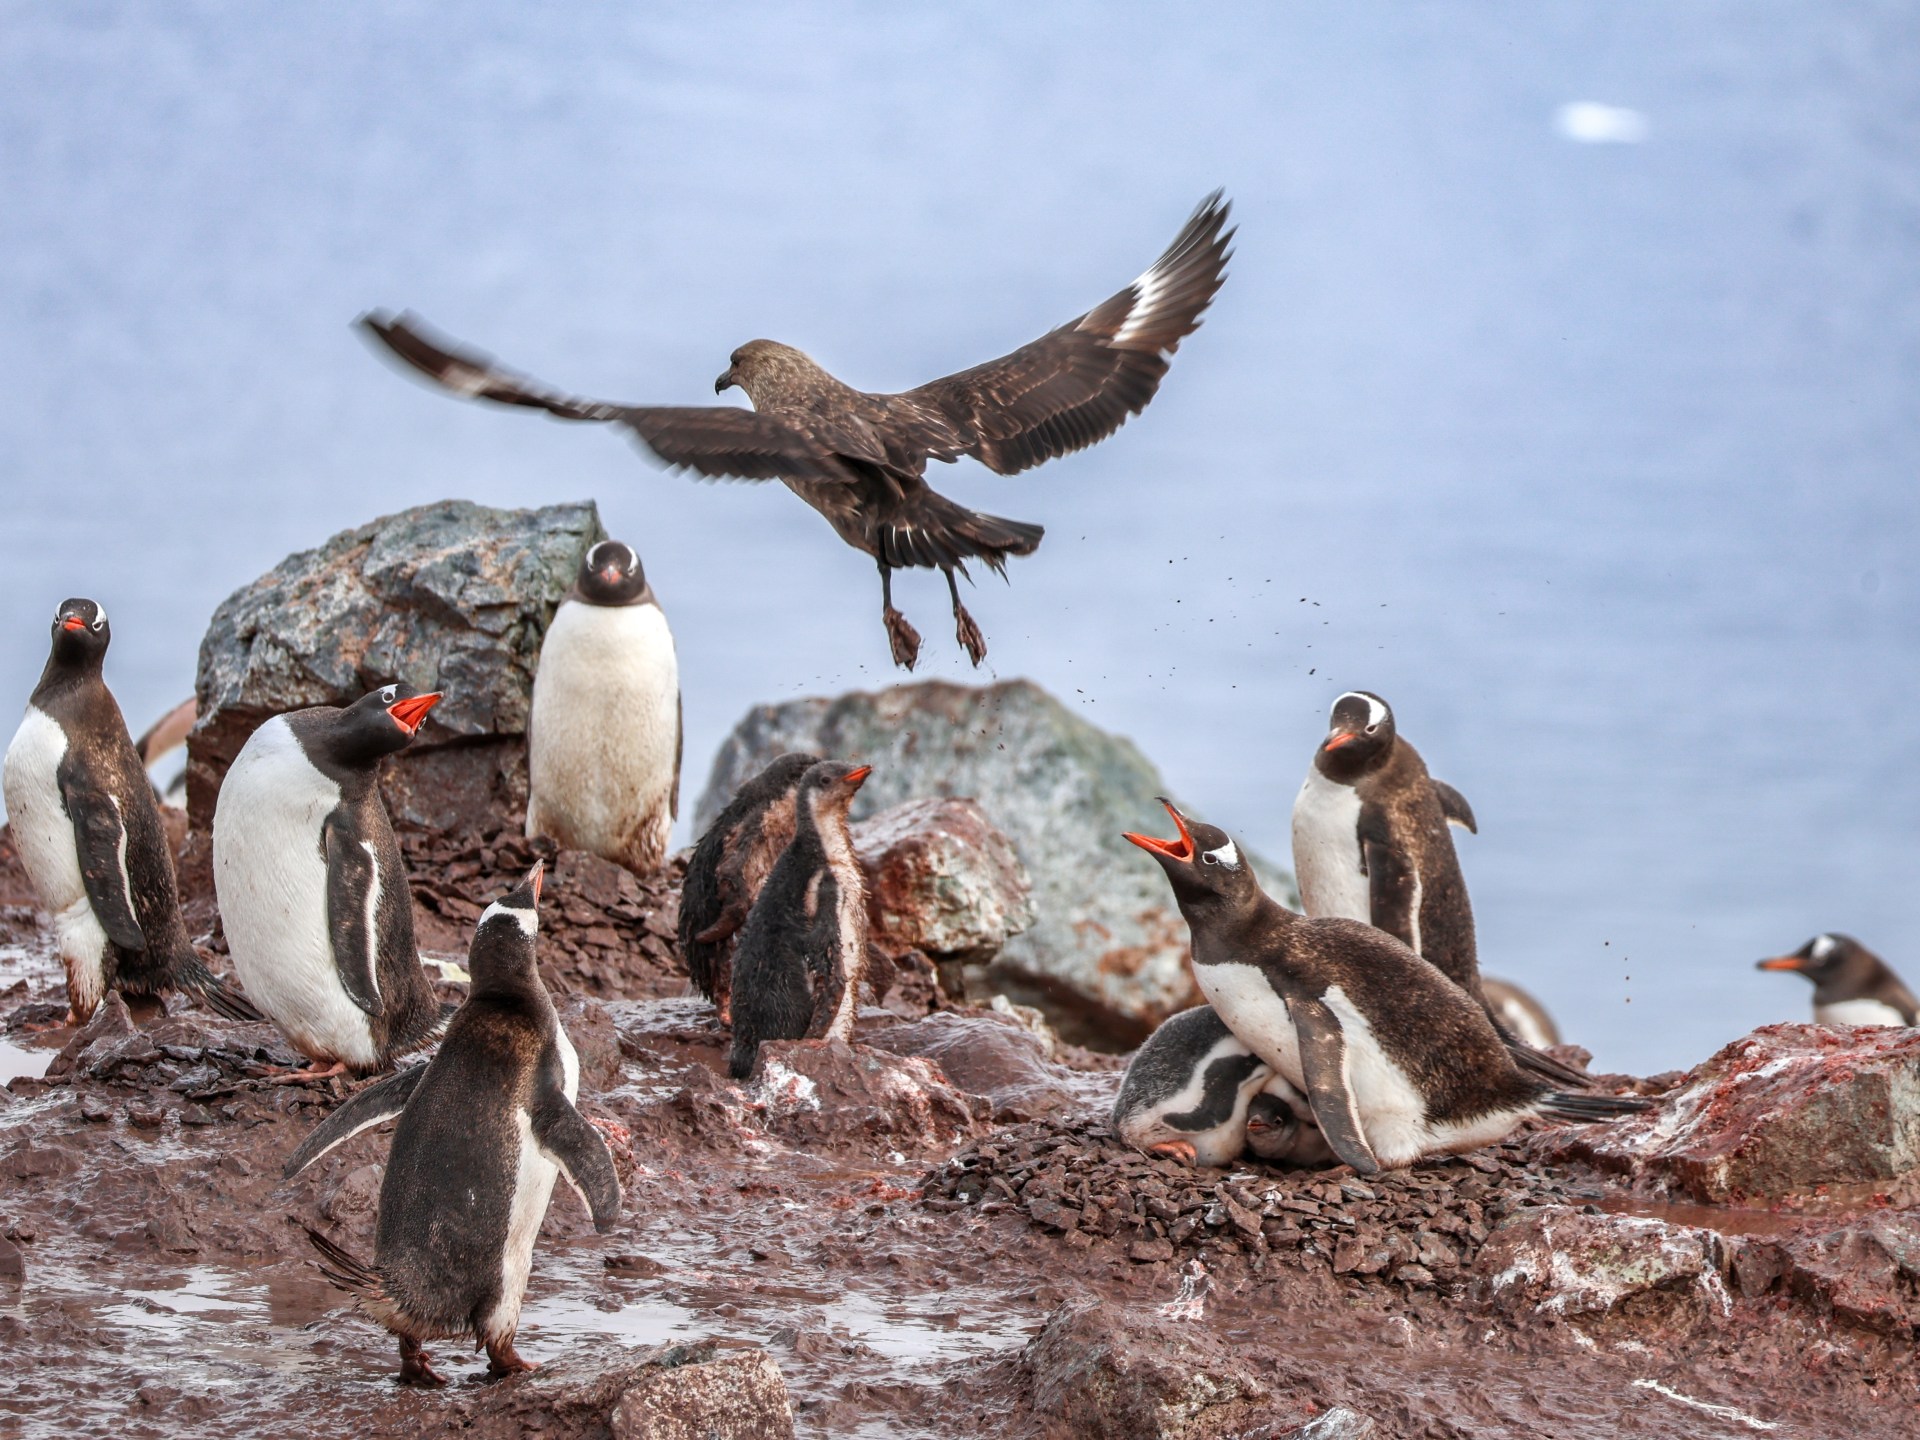 إنفلونزا الطيور تظهر في القطب الجنوبي وتهدد مستعمرات البطريق | علوم – البوكس نيوز